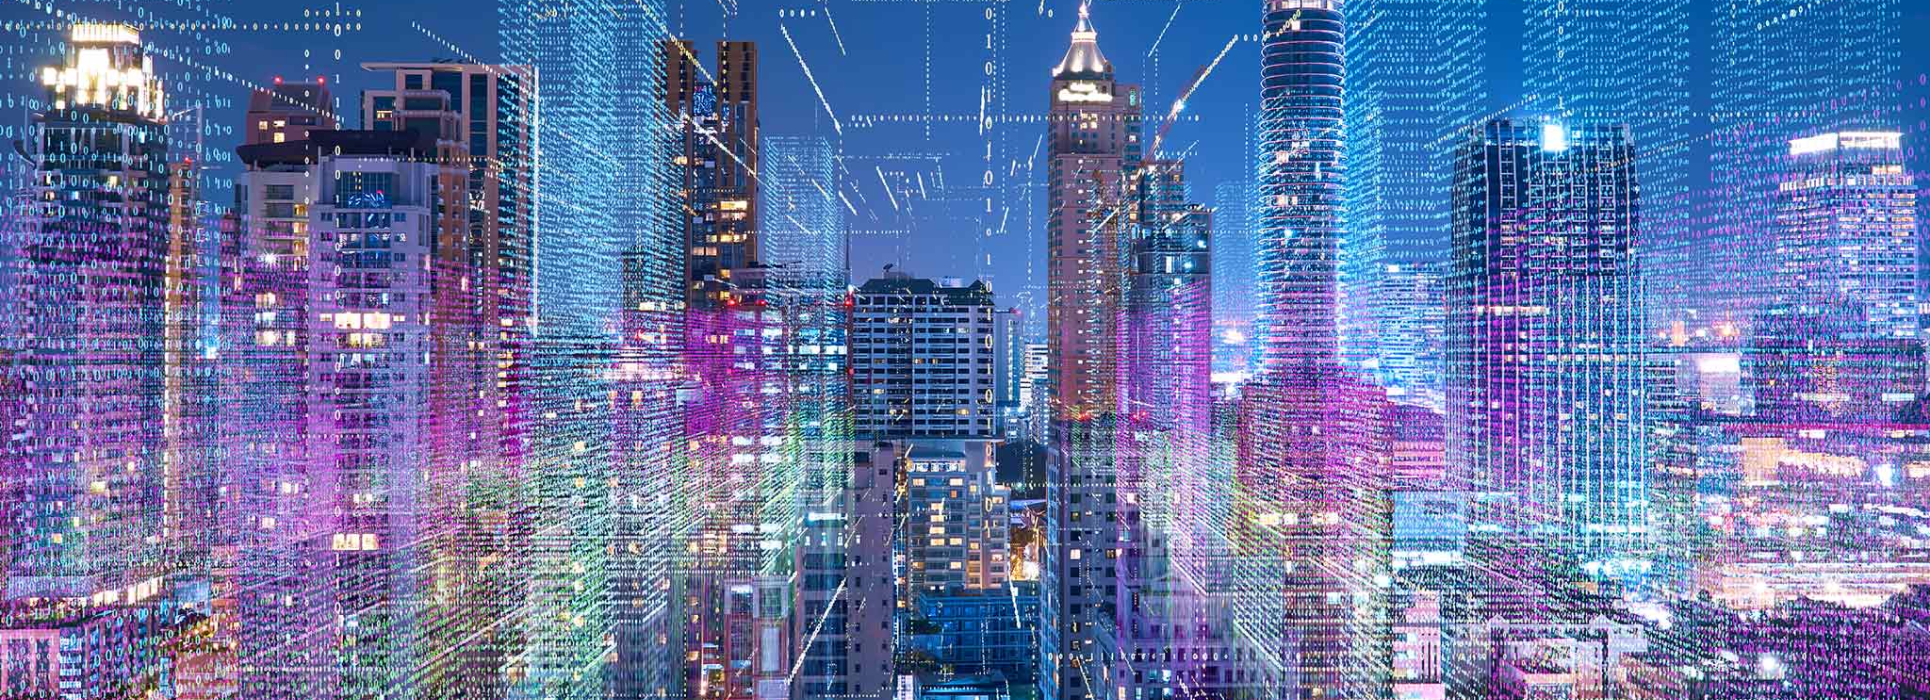 La technologie IoT et Smart City pour améliorer la vie intelligente